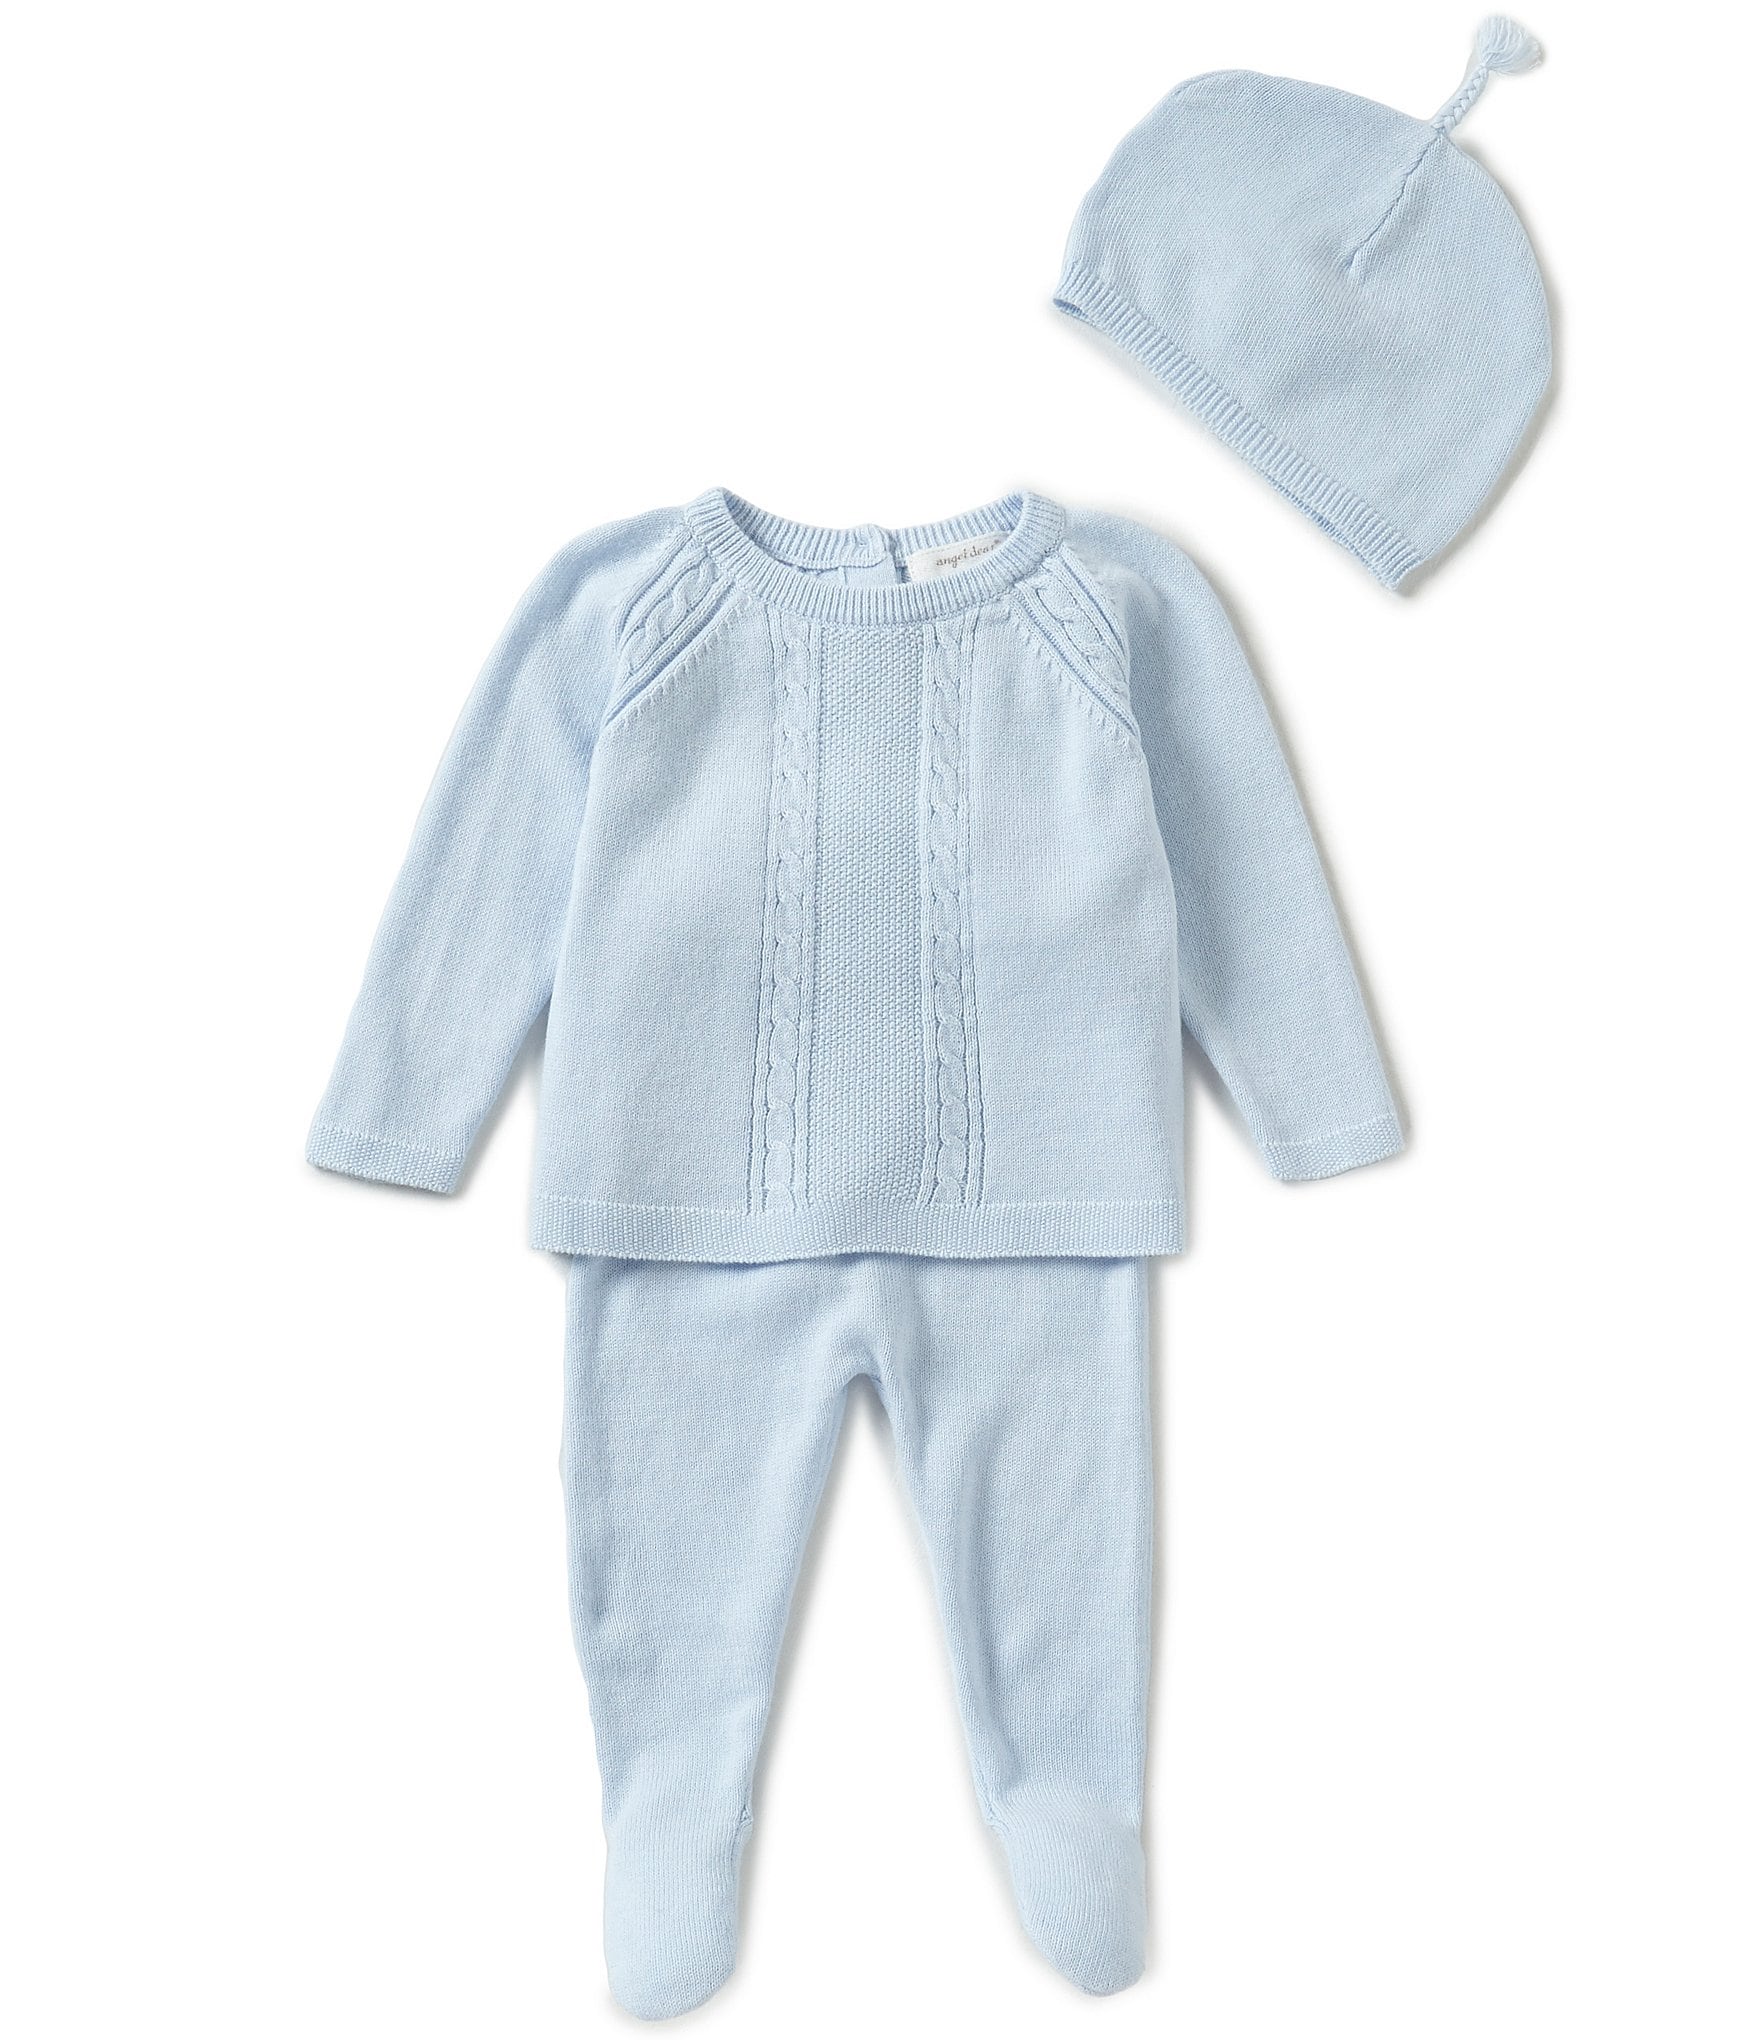 Angel Dear Baby Boys Clothing | Dillard's